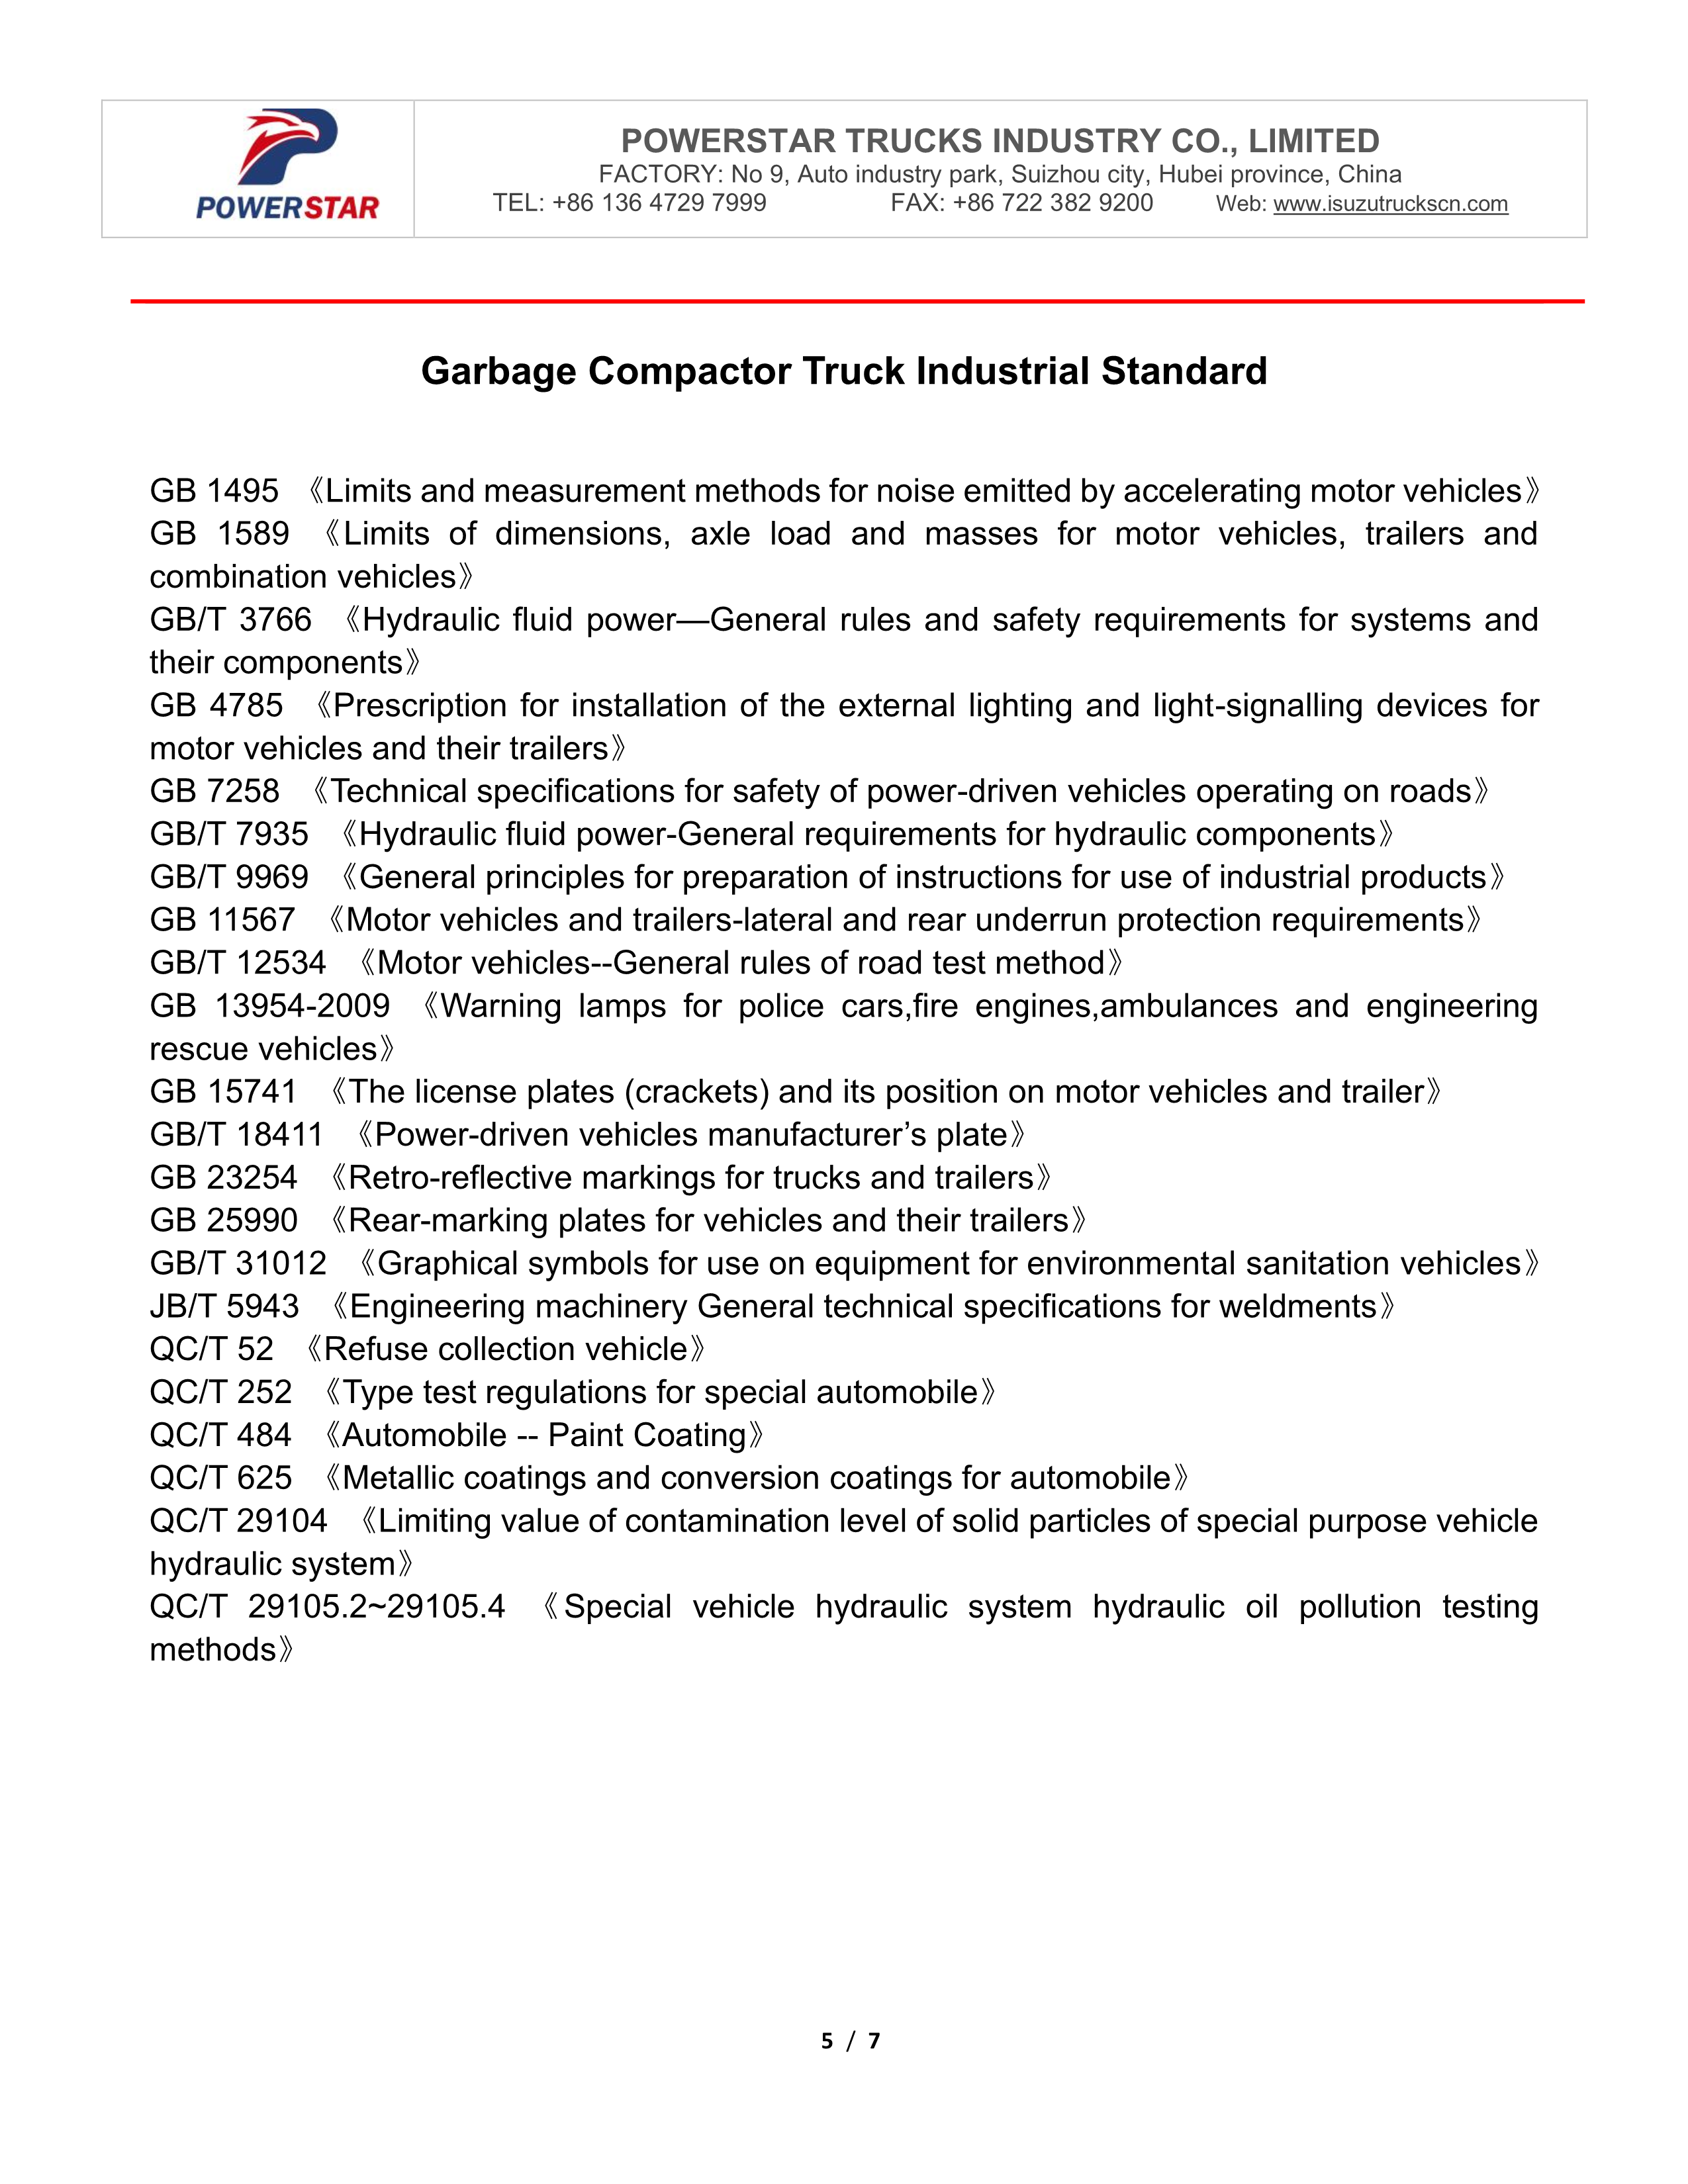 Lista de verificación de pruebas de fábrica del camión compactador de basura Isuzu